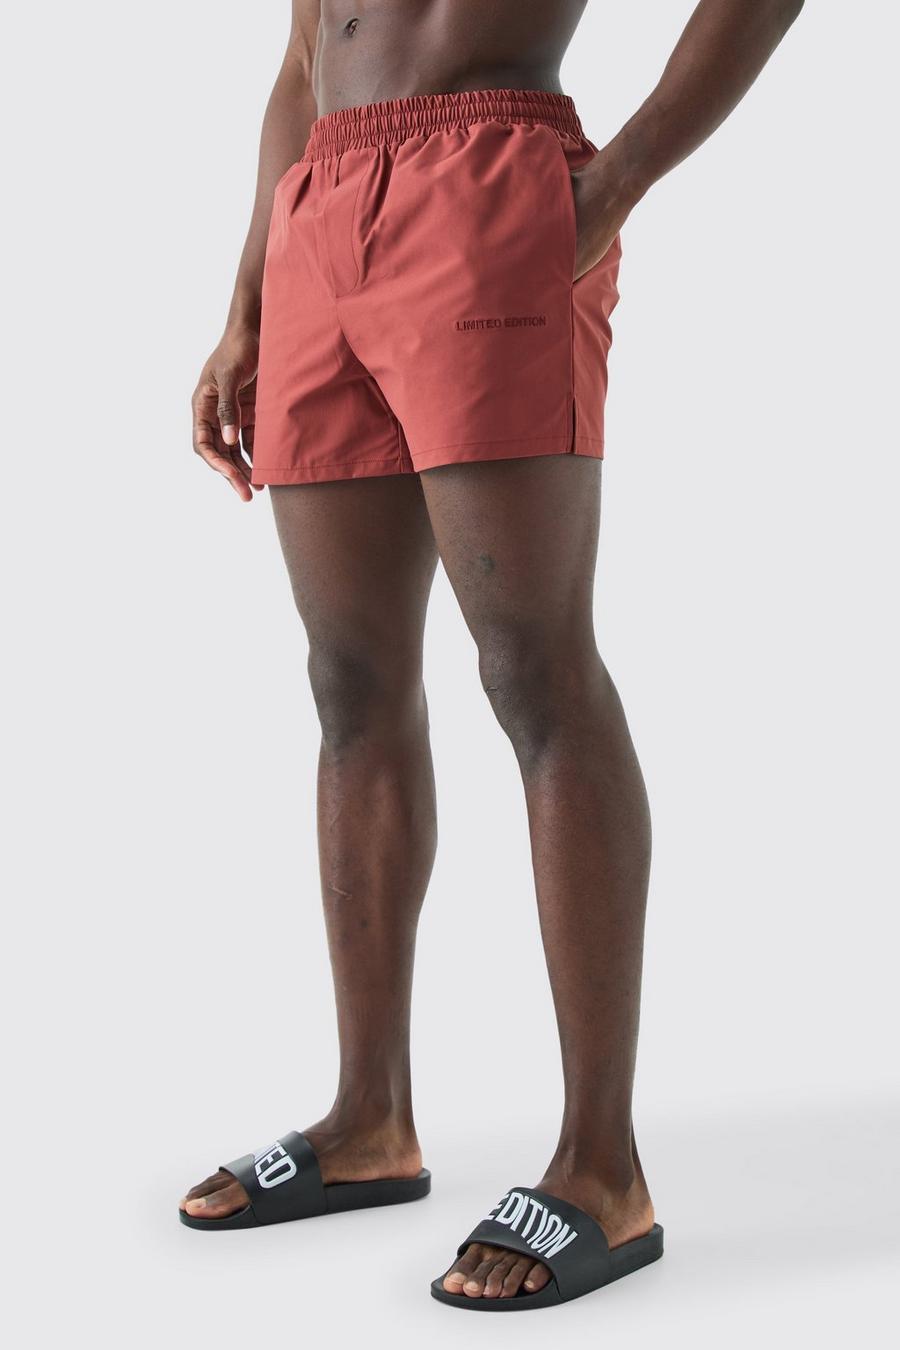 Pantaloncini da bagno corto Smart Limited Edition, Red